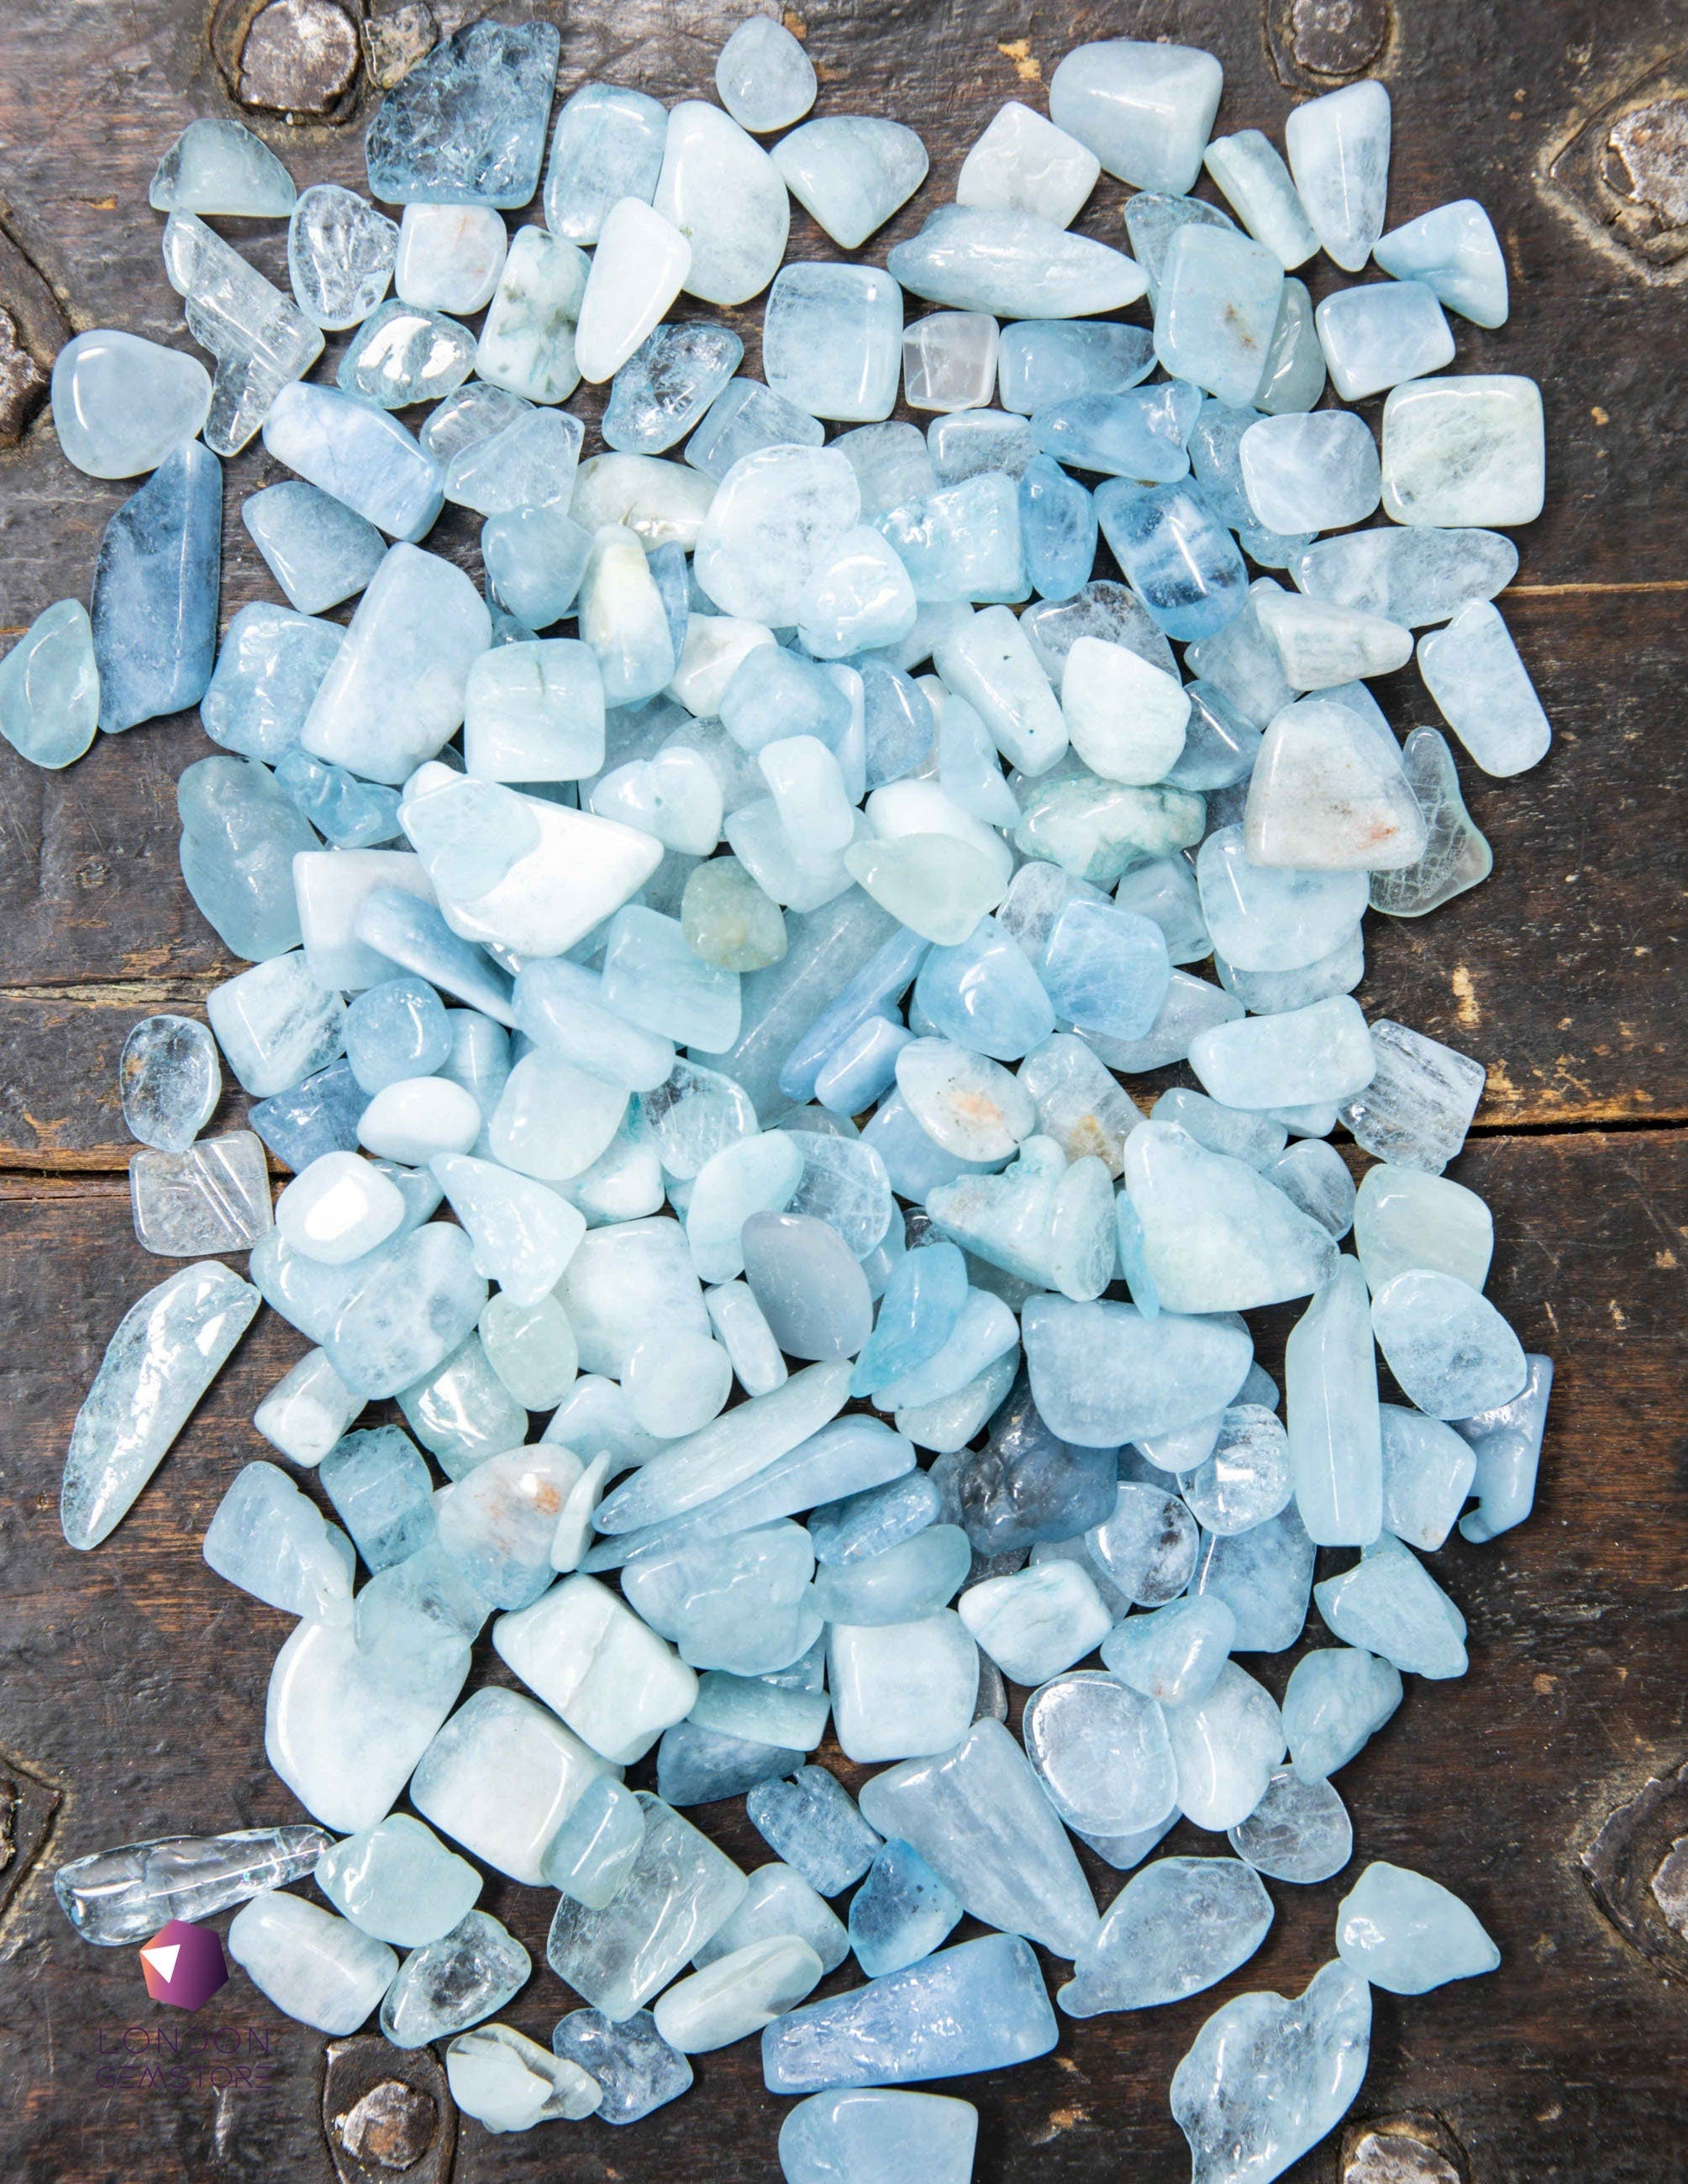 Aquamarine Crystal Gravel for Aquarium Decor